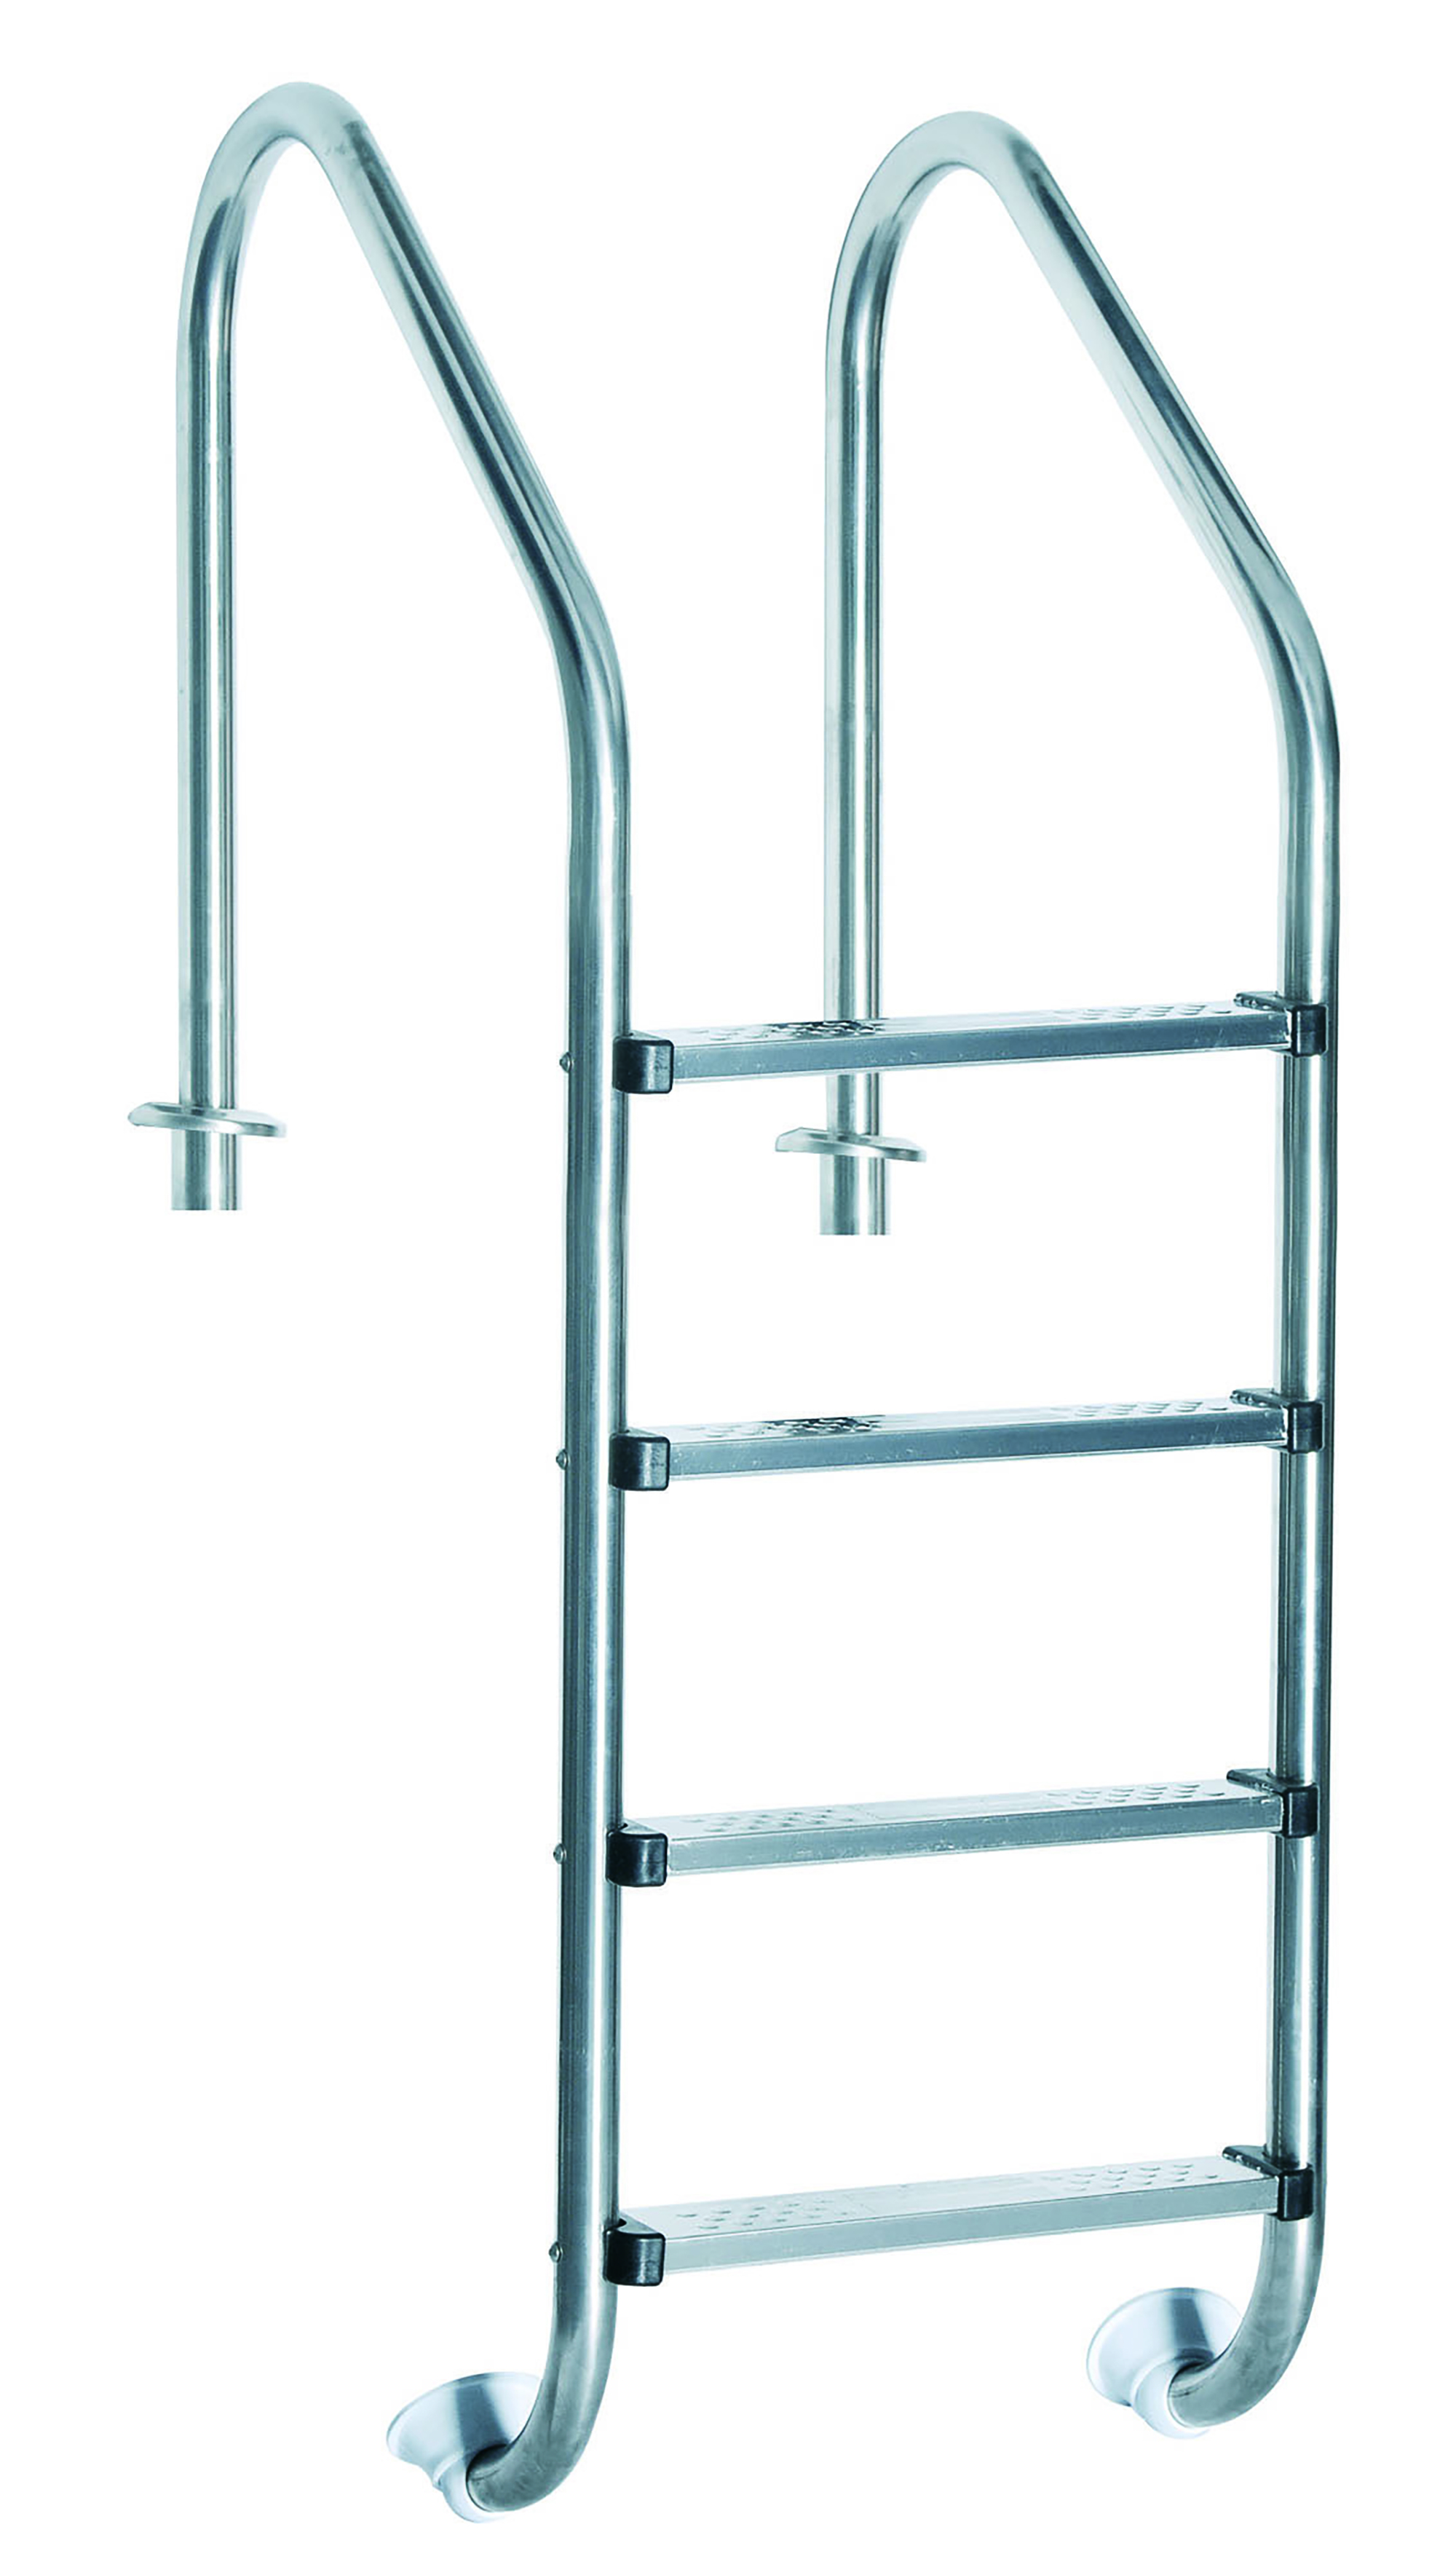 SWIM & FUN Ladder Grau 4-Steps, Poolleiter, inground